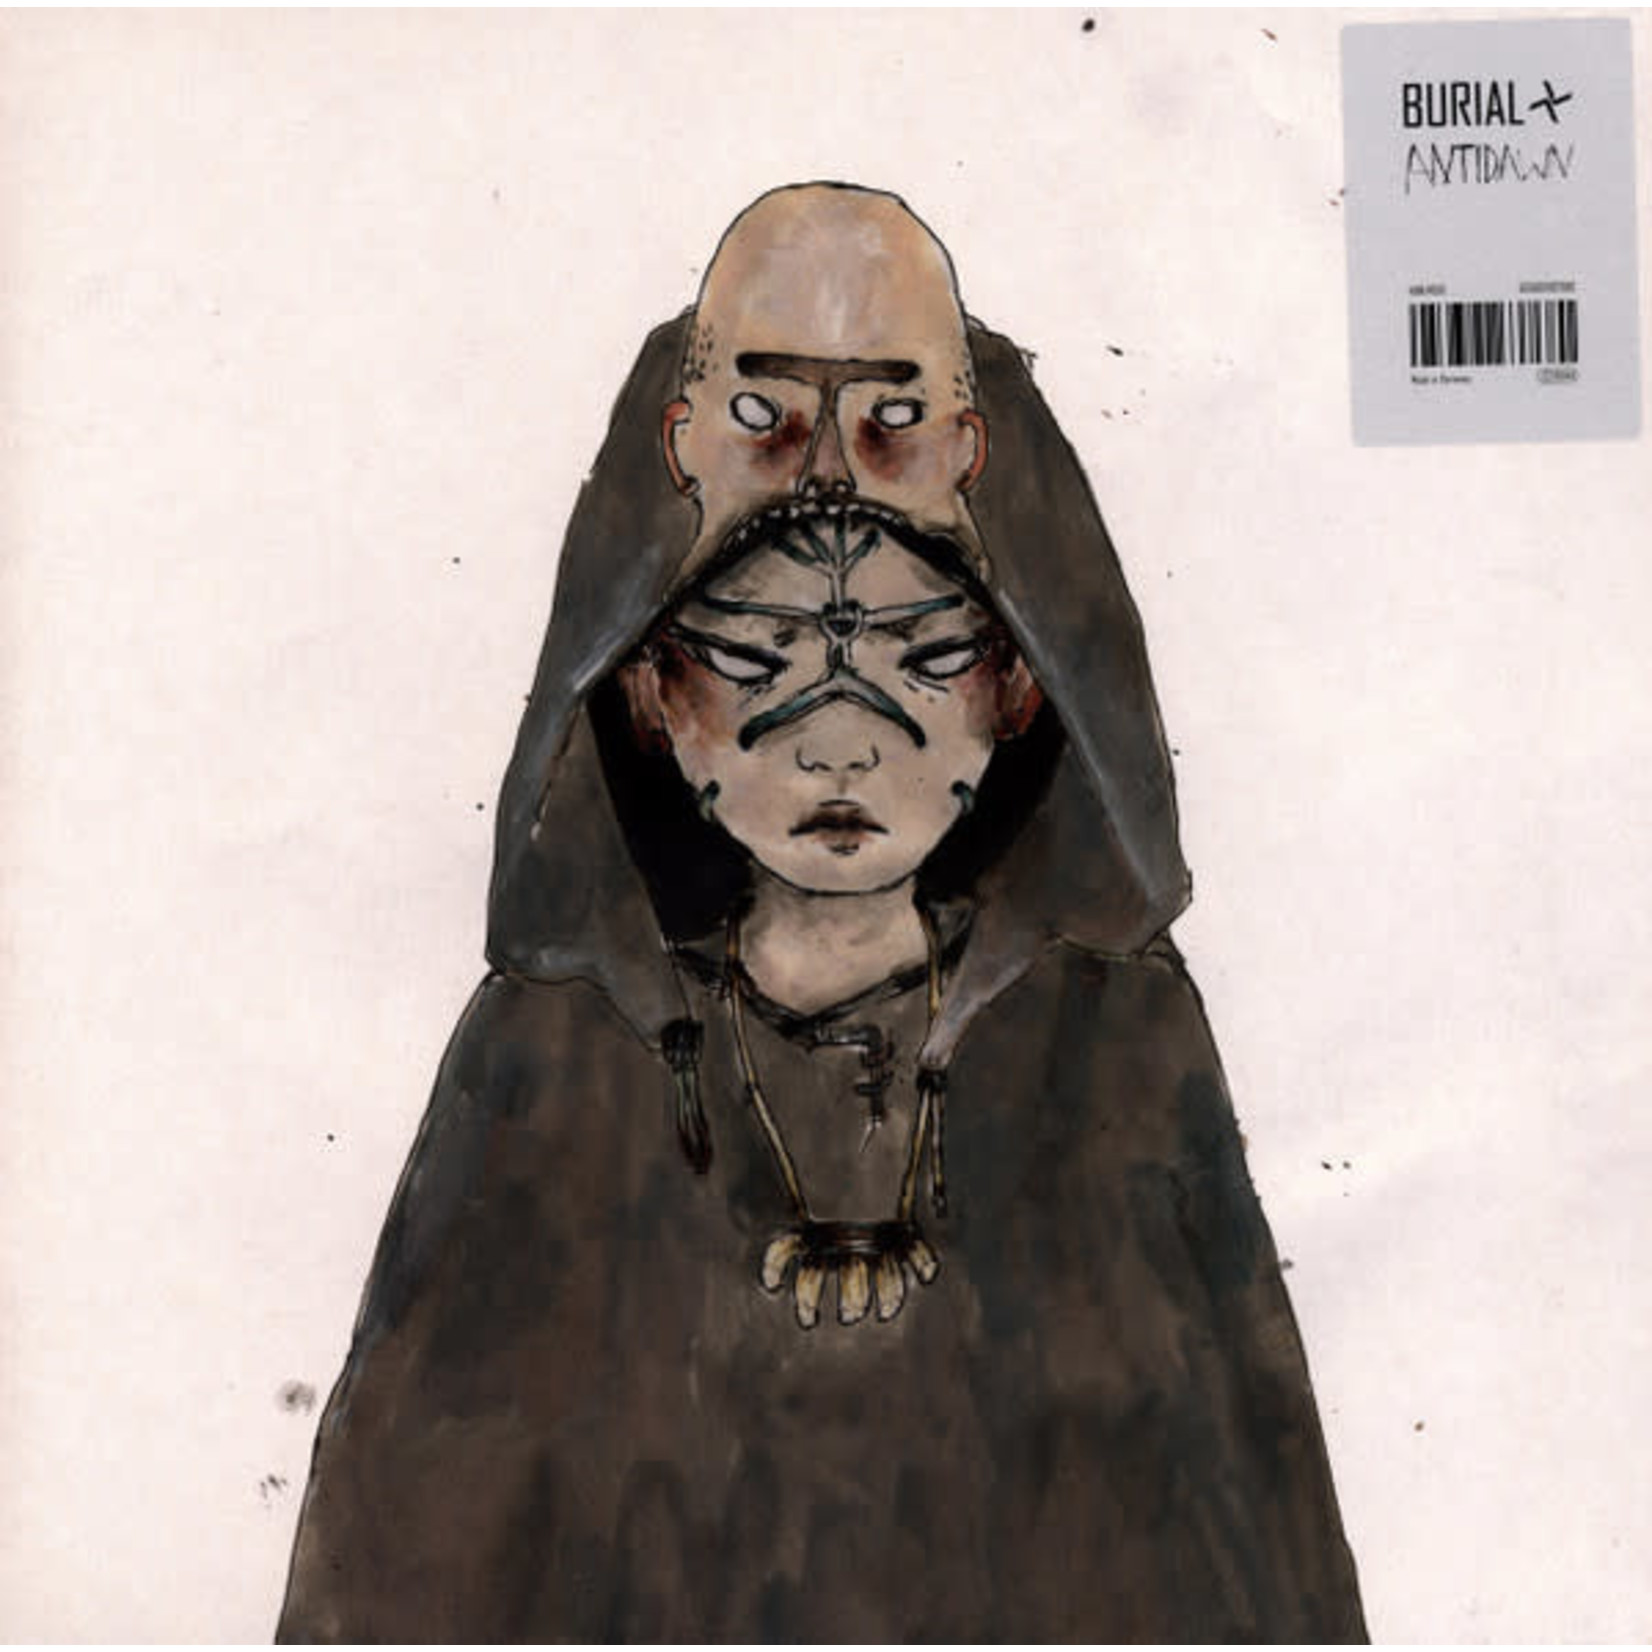 Burial - Antidawn EP (LP)